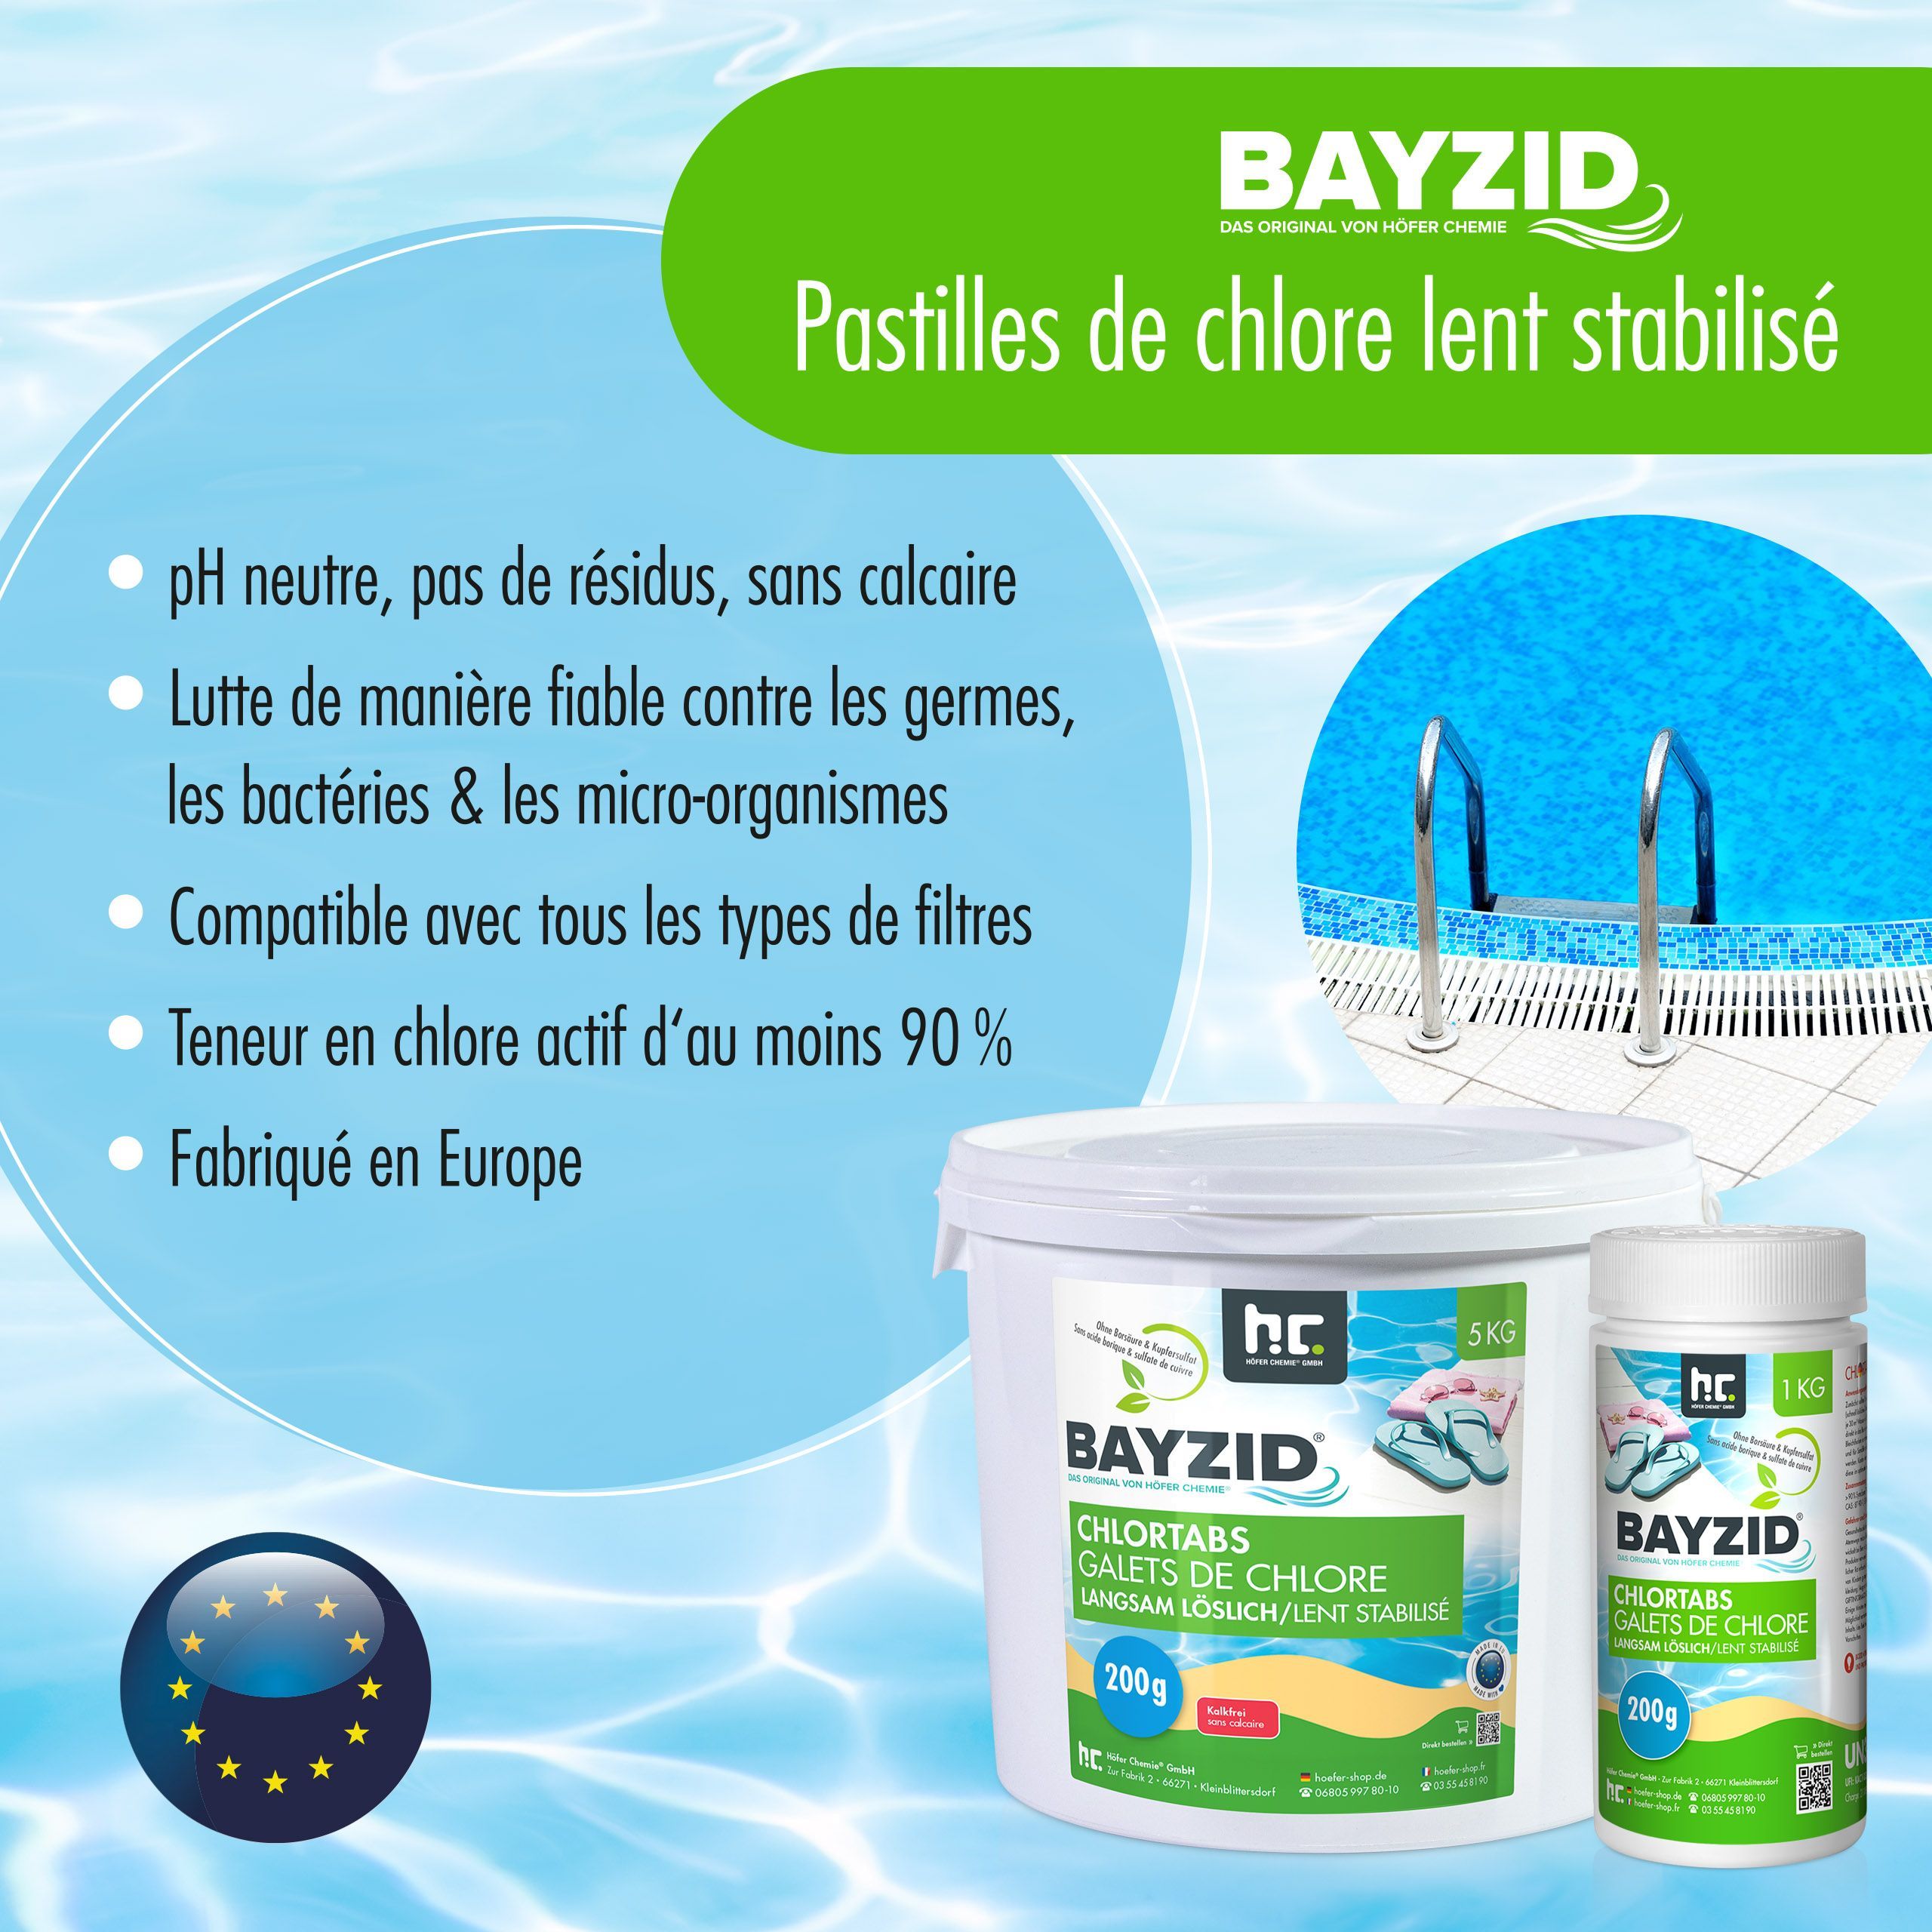 5 kg BAYZID® Galets de chlore (200g) à dissolution lente